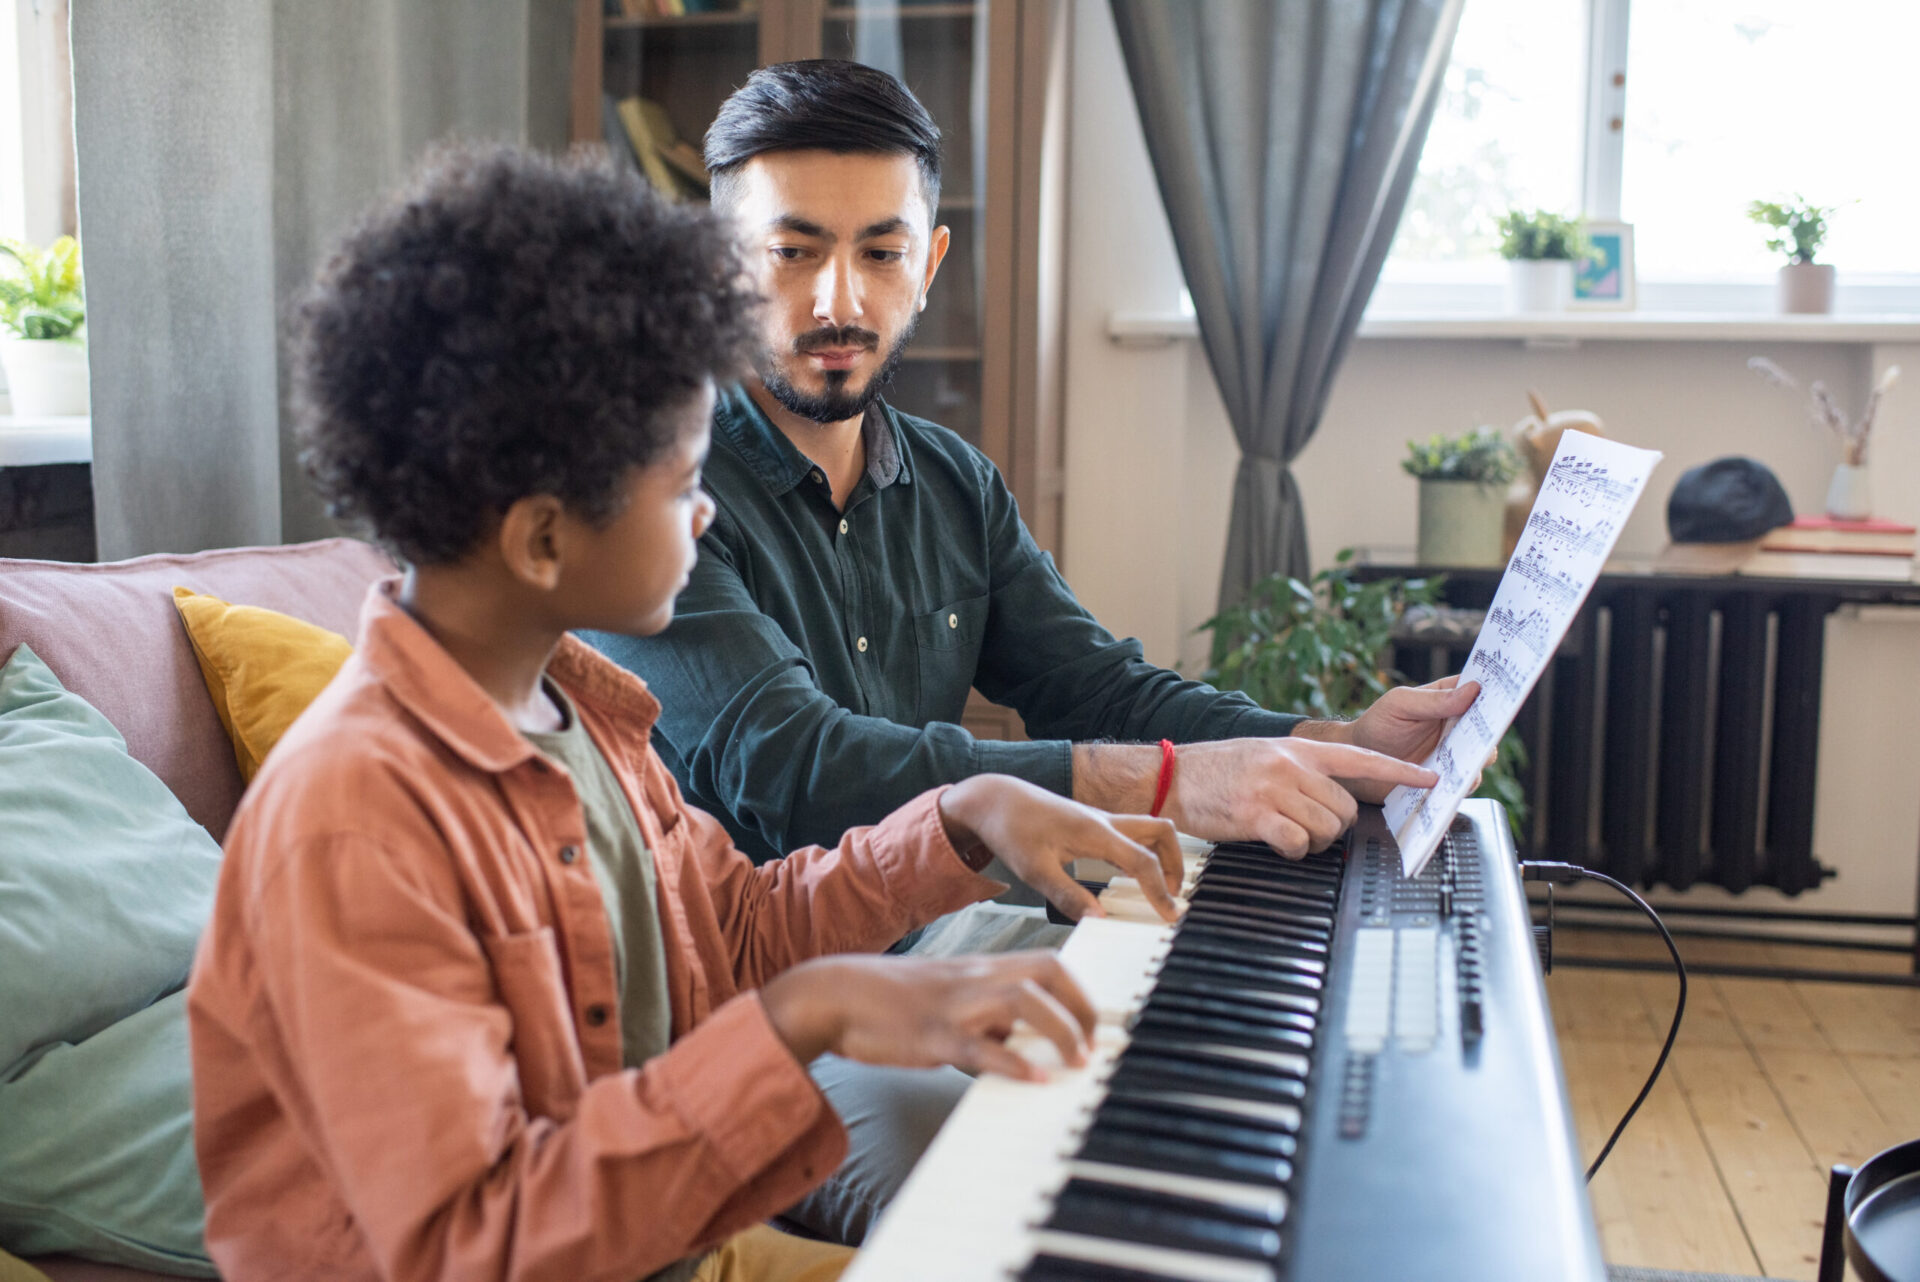 Cours de Piano en ligne, à domicile ou en école : pourquoi s